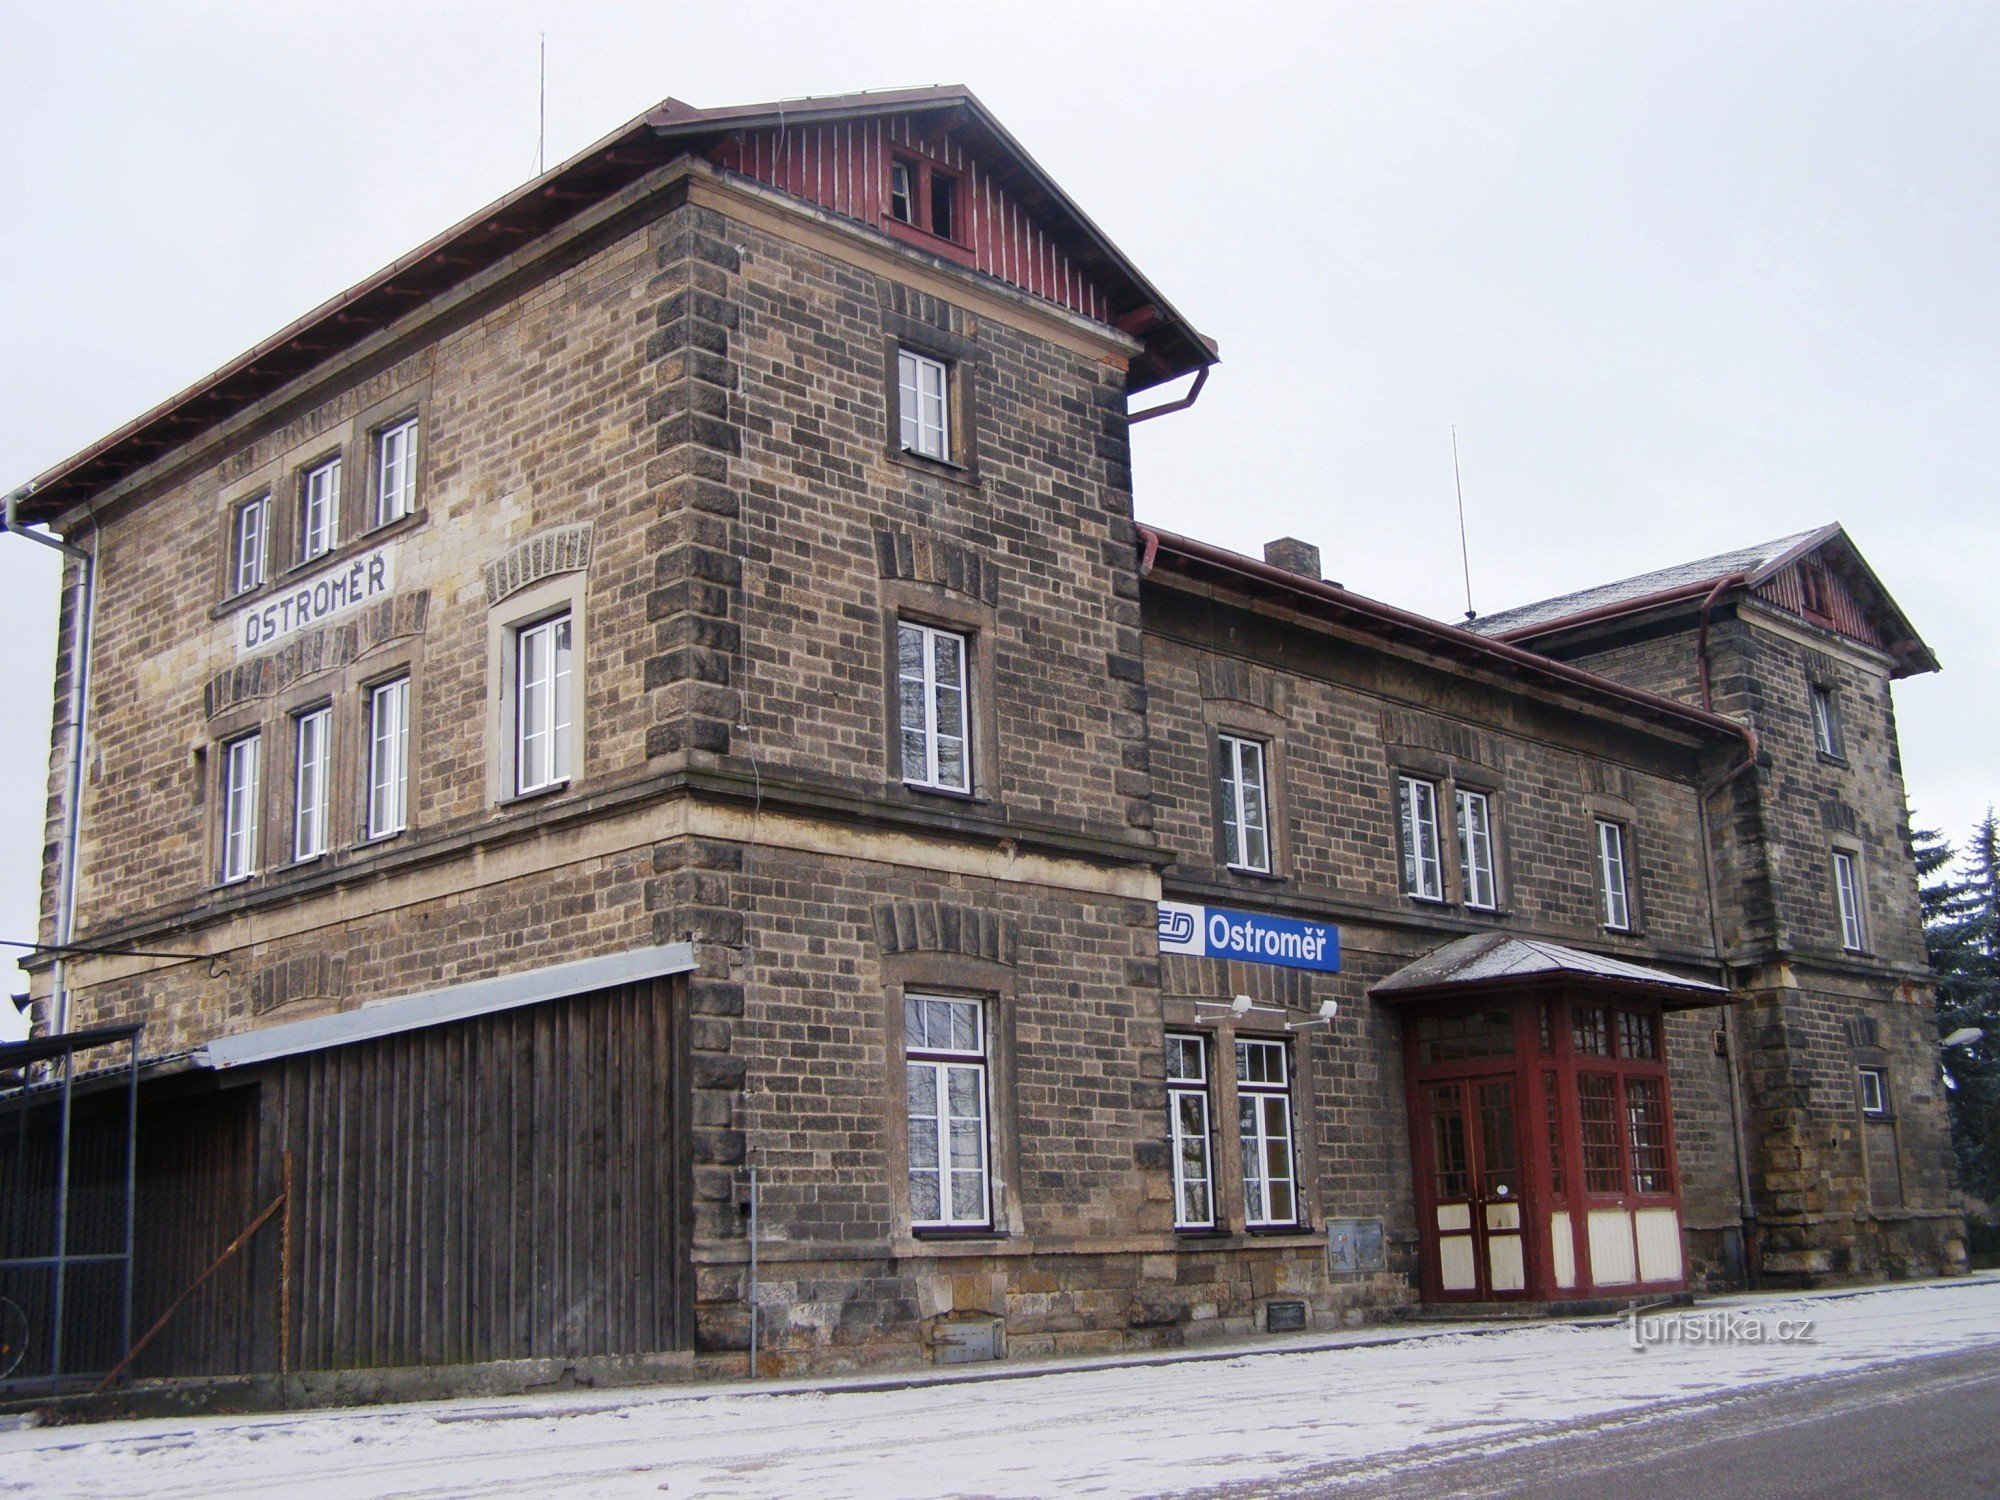 Остромер - железнодорожная станция